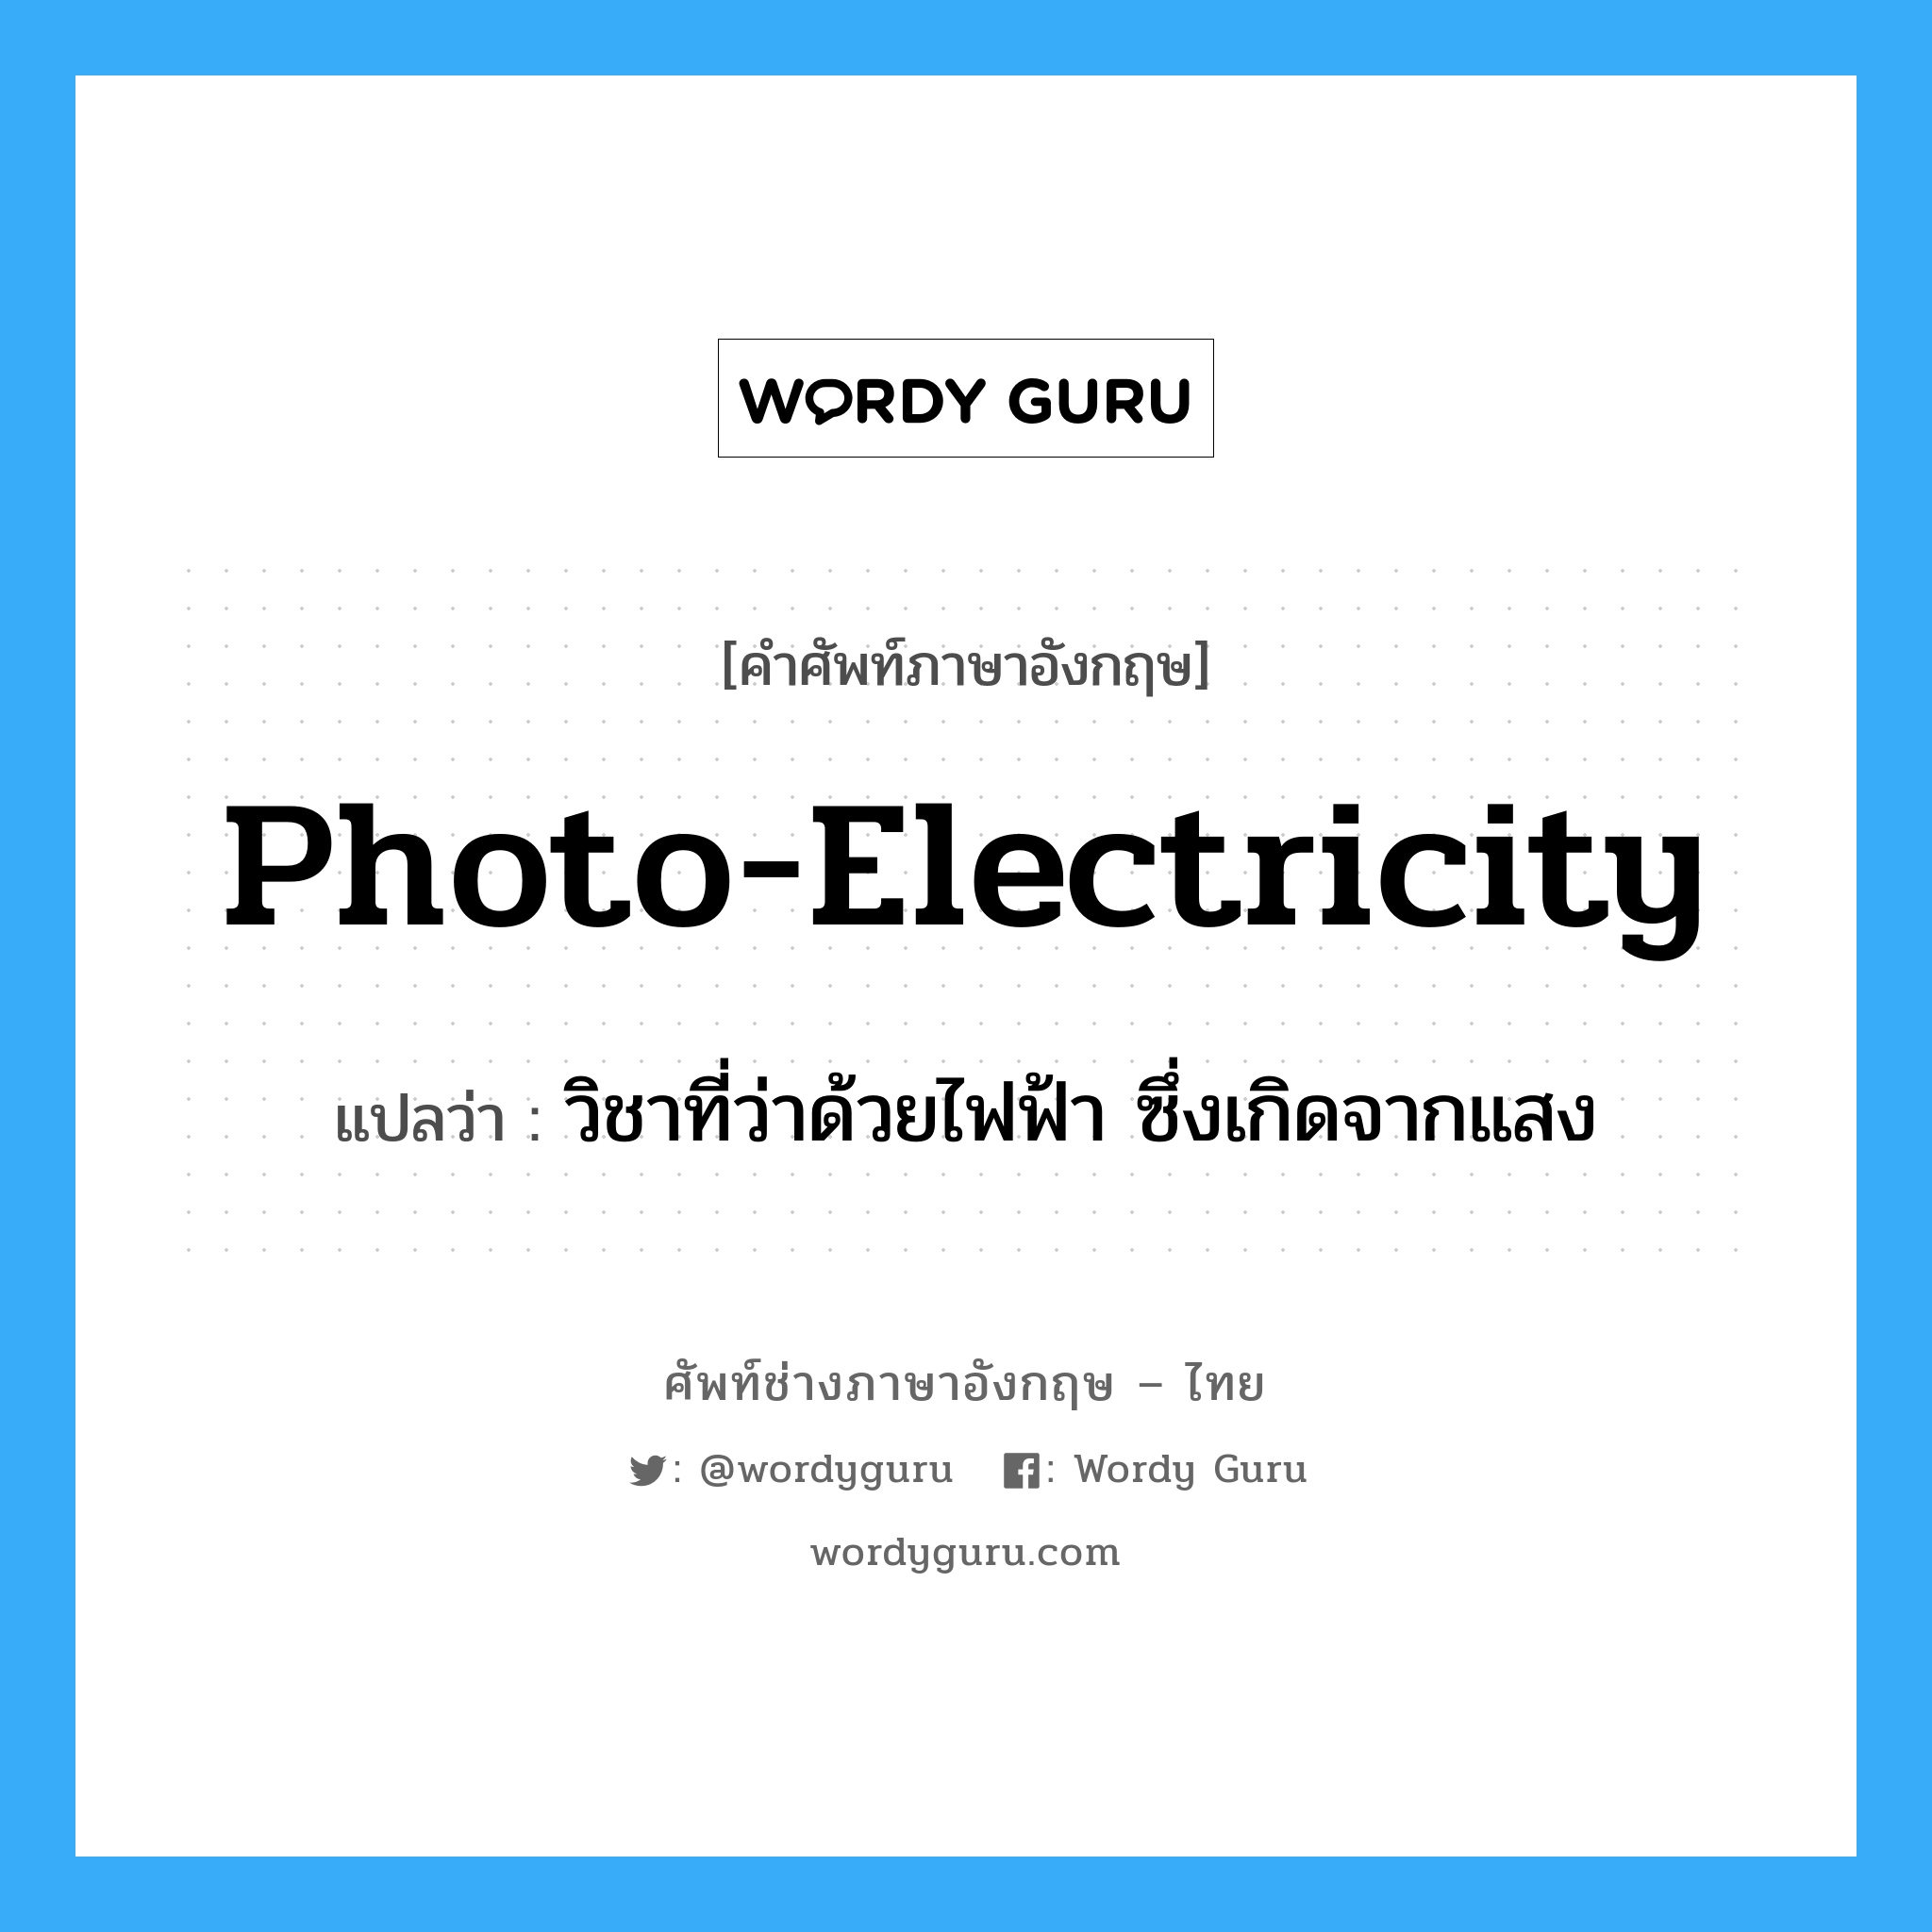 วิชาที่ว่าด้วยไฟฟ้า ซึ่งเกิดจากแสง ภาษาอังกฤษ?, คำศัพท์ช่างภาษาอังกฤษ - ไทย วิชาที่ว่าด้วยไฟฟ้า ซึ่งเกิดจากแสง คำศัพท์ภาษาอังกฤษ วิชาที่ว่าด้วยไฟฟ้า ซึ่งเกิดจากแสง แปลว่า photo-electricity